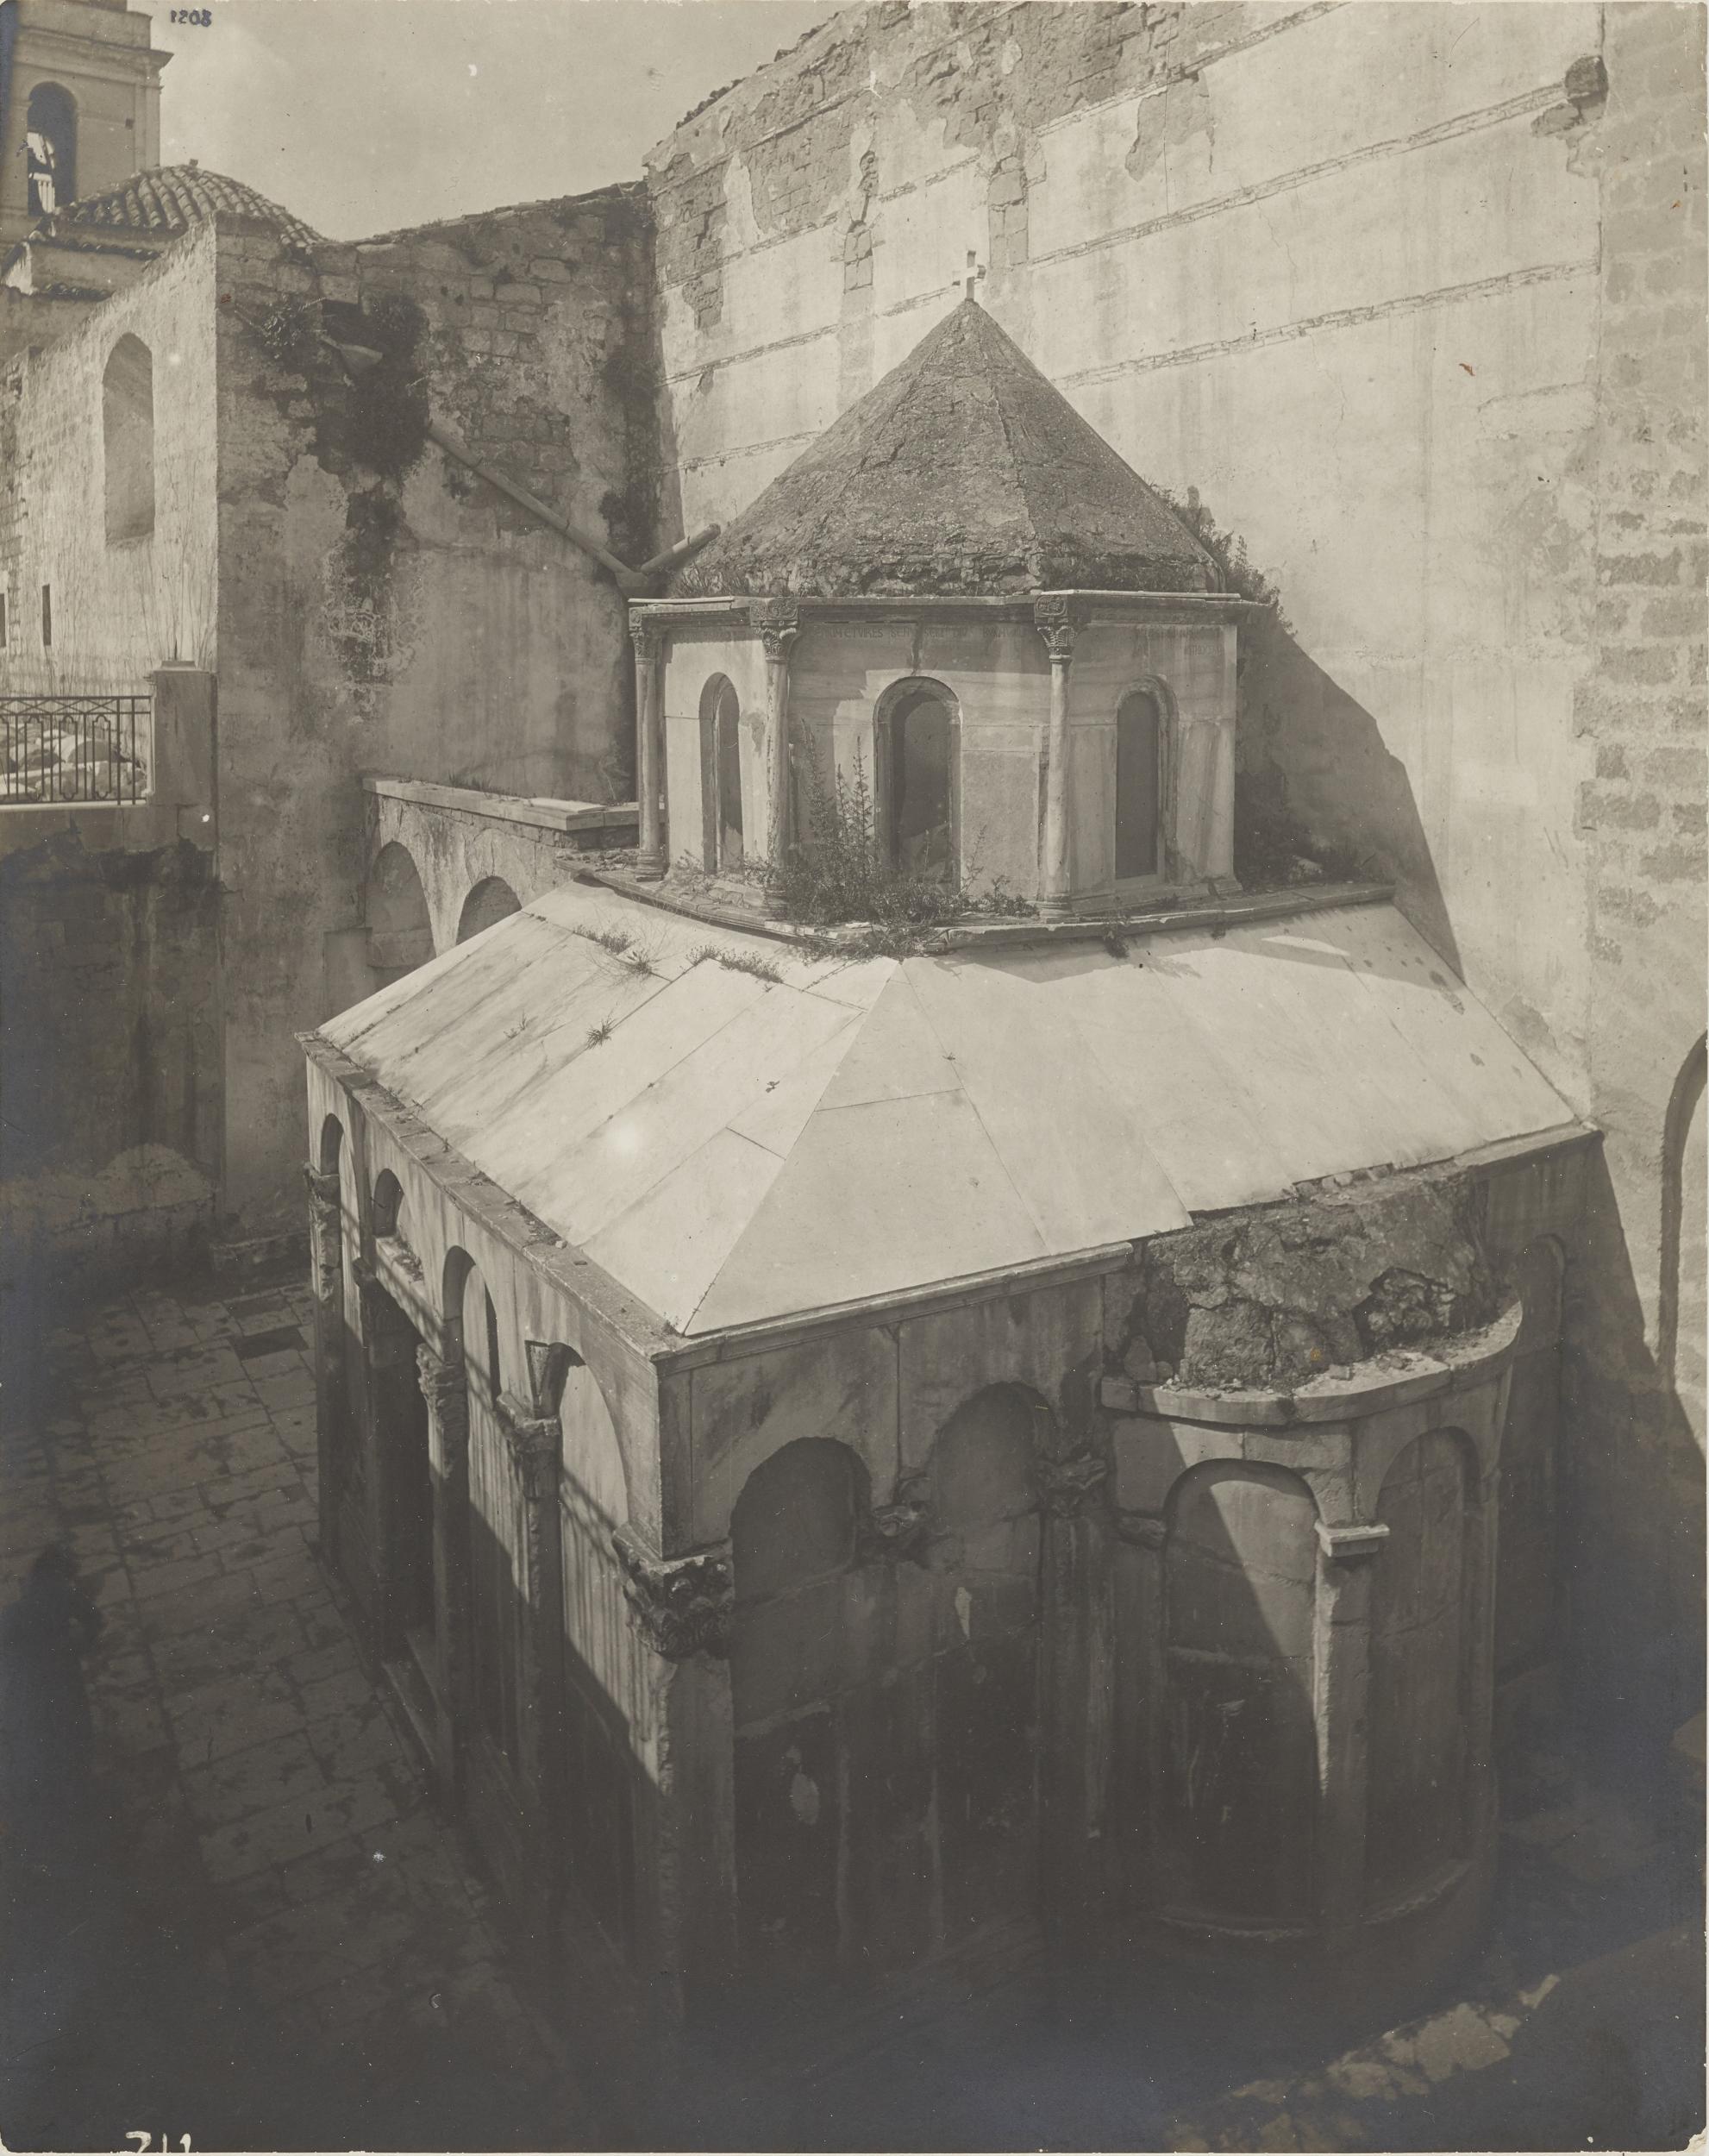 Fotografo non identificato, Canosa di Puglia - Cattedrale San Sabino, esterno, tomba di Boemondo, prima del restauro, 1926-1950, 16,5x12 cm, MPI309701